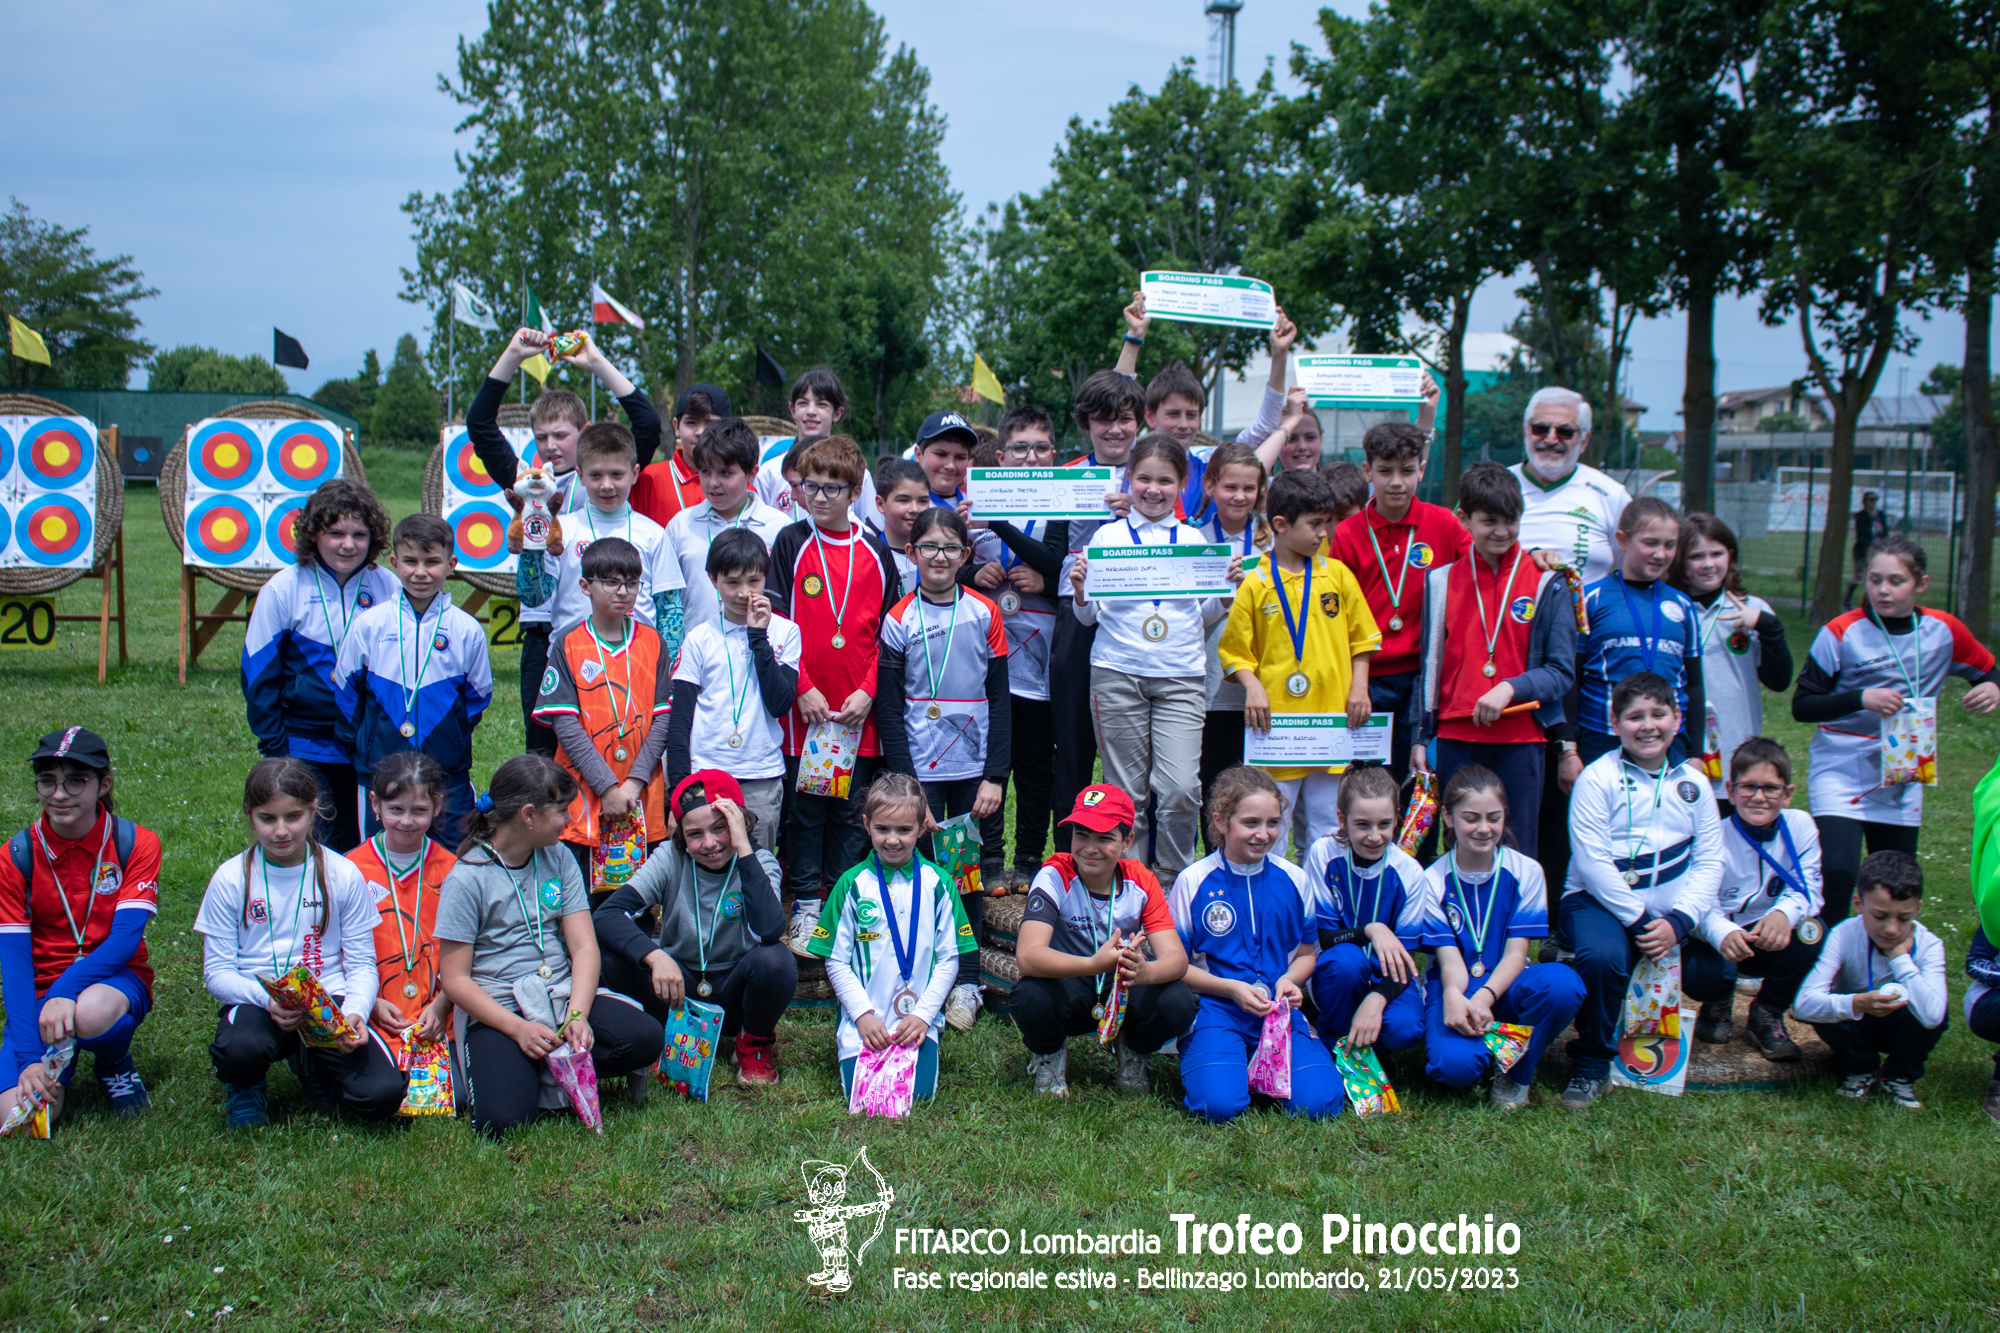 Lombardia: Trofeo Pinocchio conclusa la fase estiva